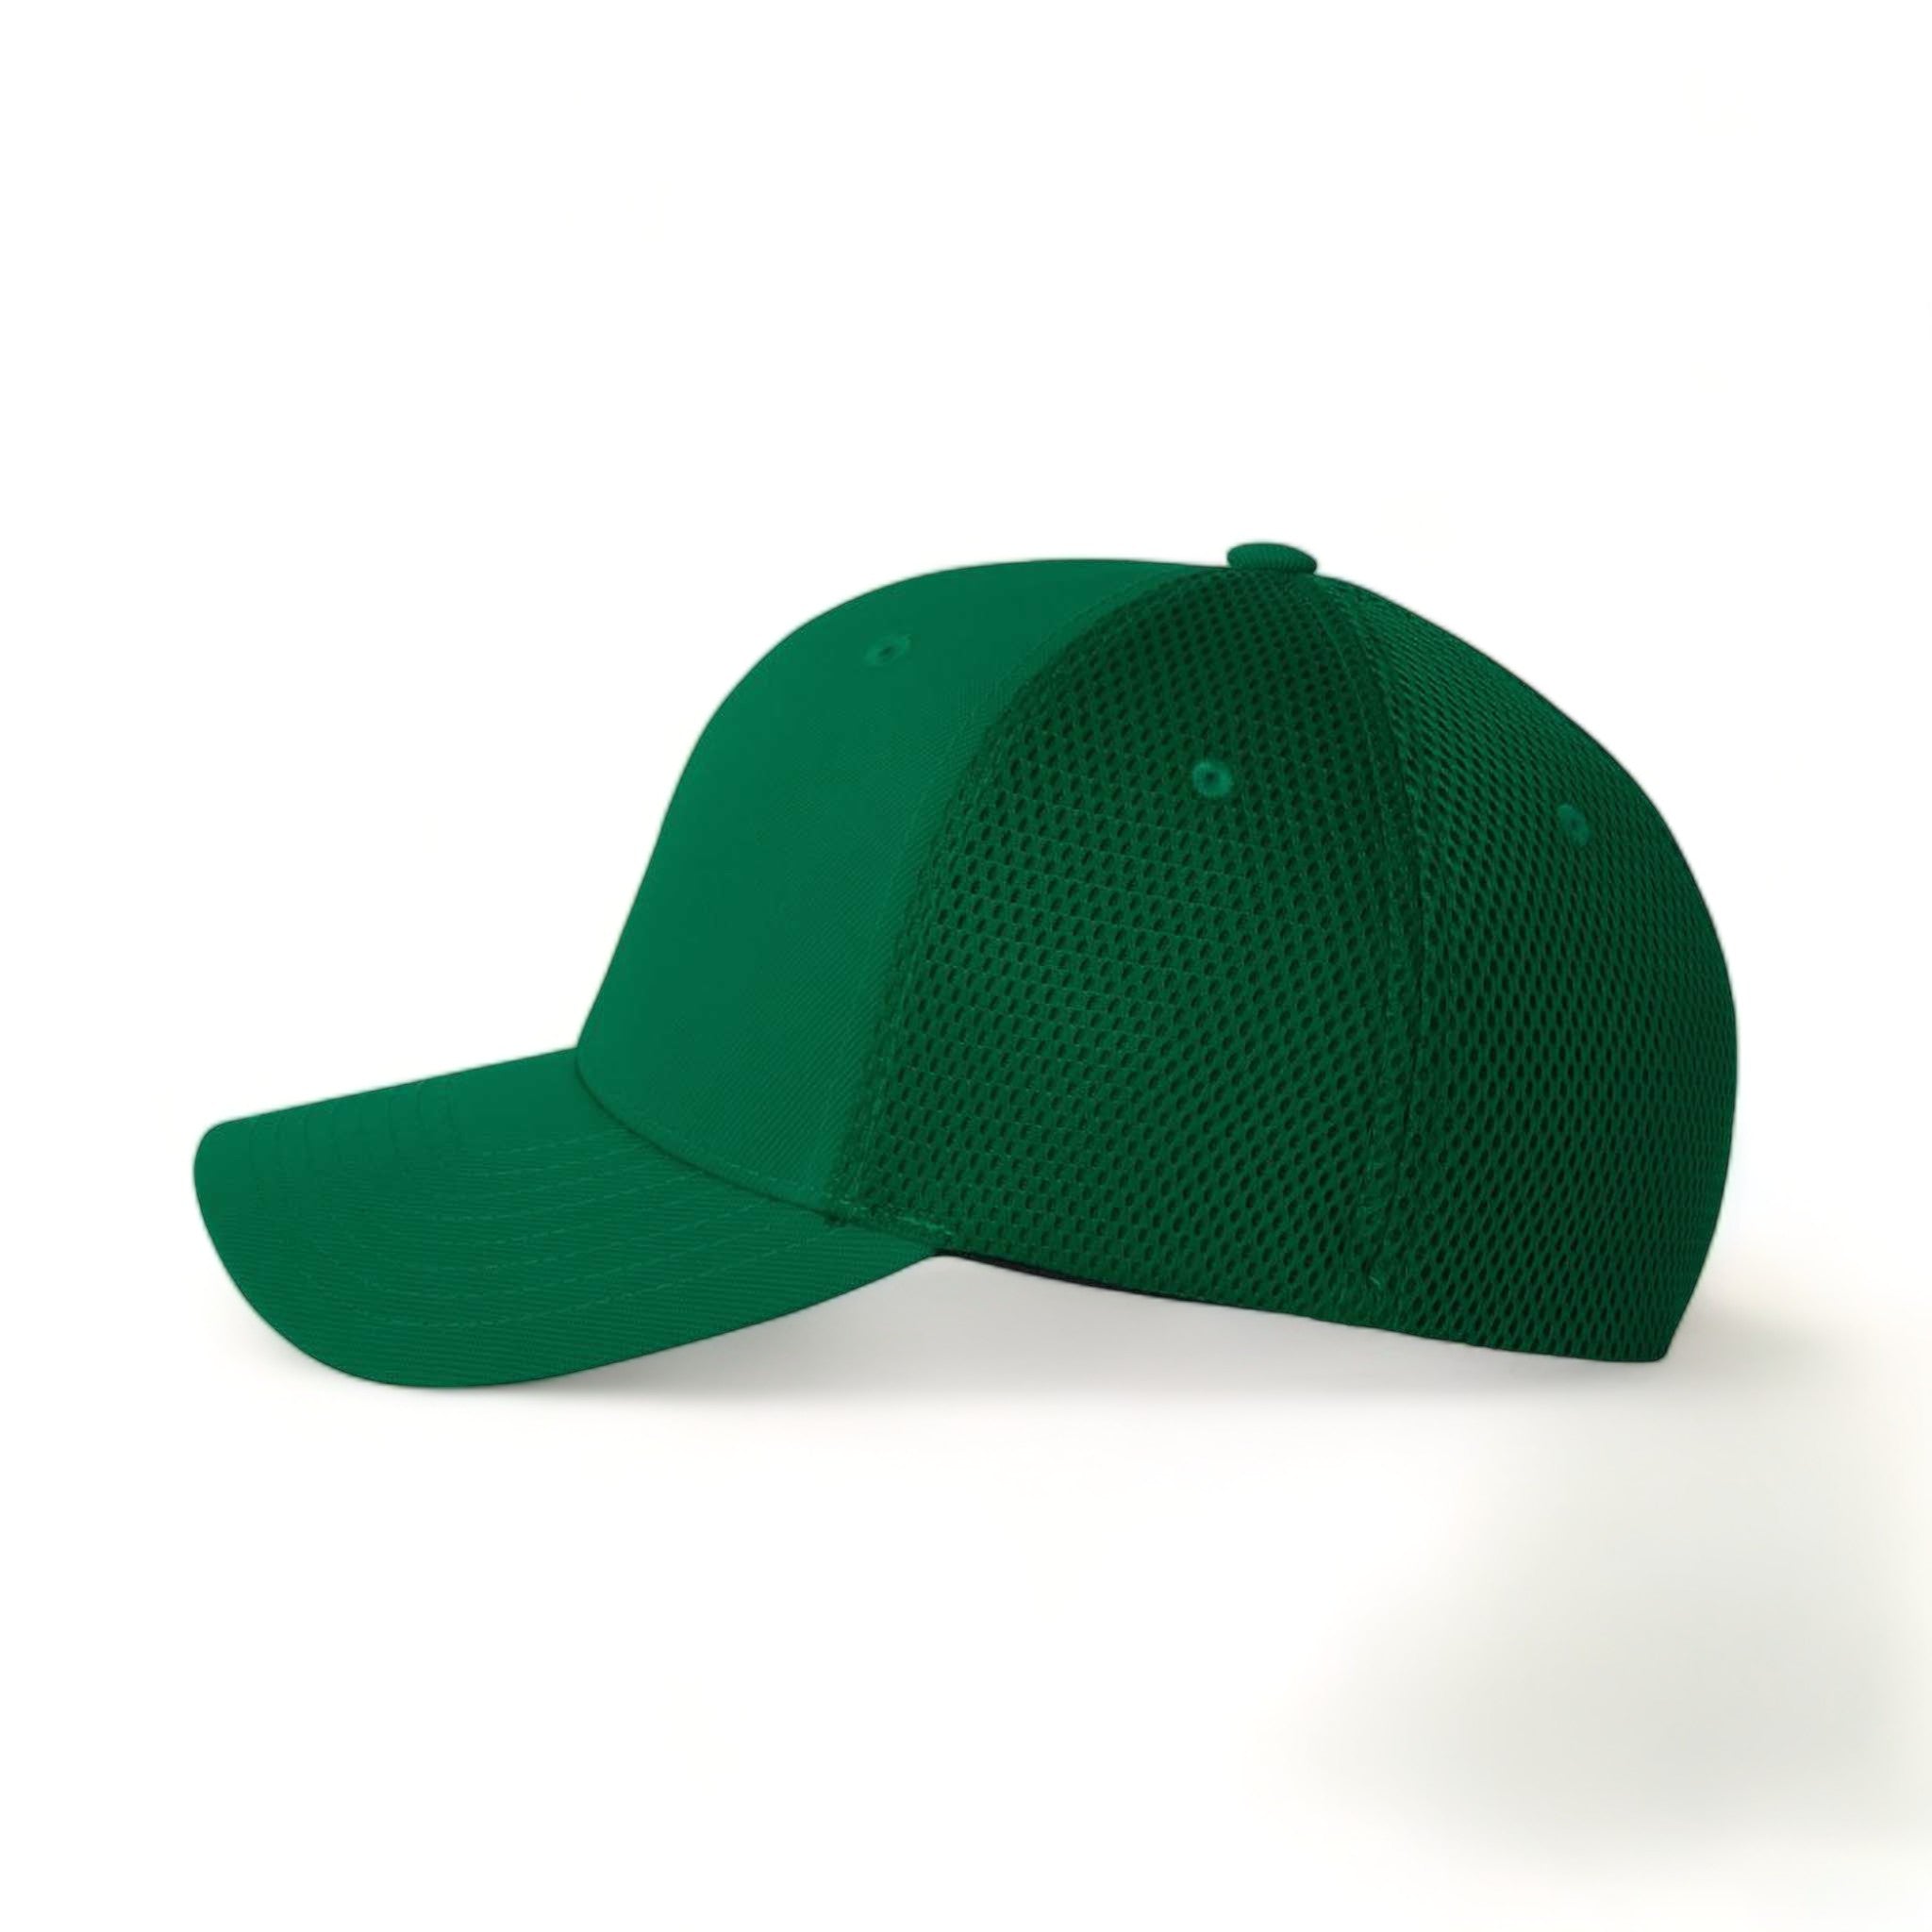 Side view of Flexfit 6533 custom hat in green